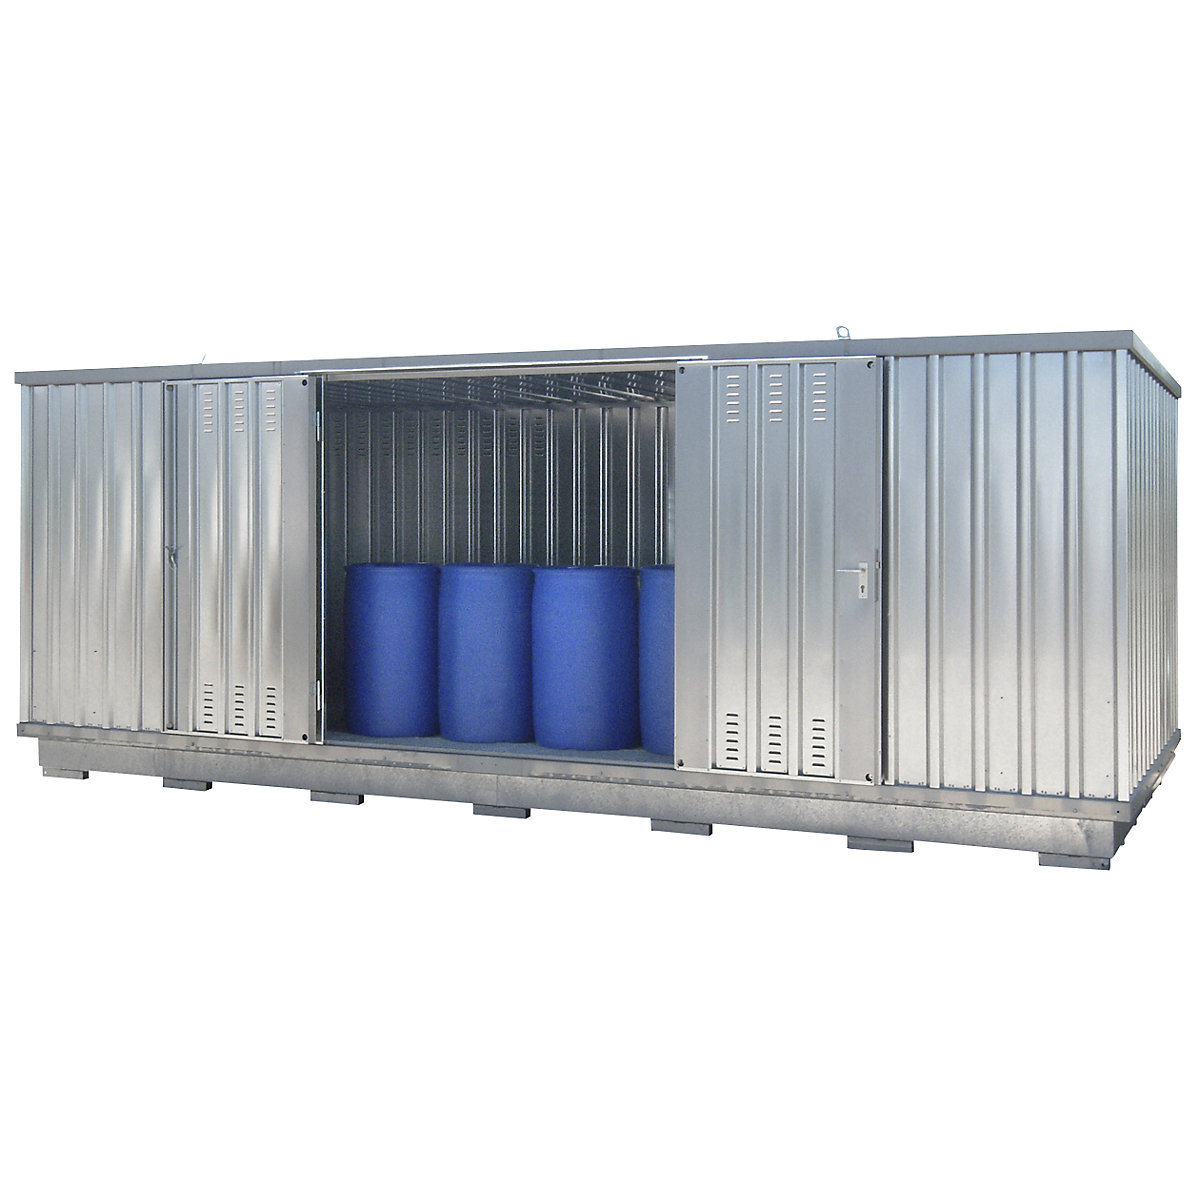 Gevaarlijke stoffen opslagcontainer voor waterverontreinigende vloeistoffen, uitwendige h x b x d = 2385 x 6075 x 2875 mm, verzinkt